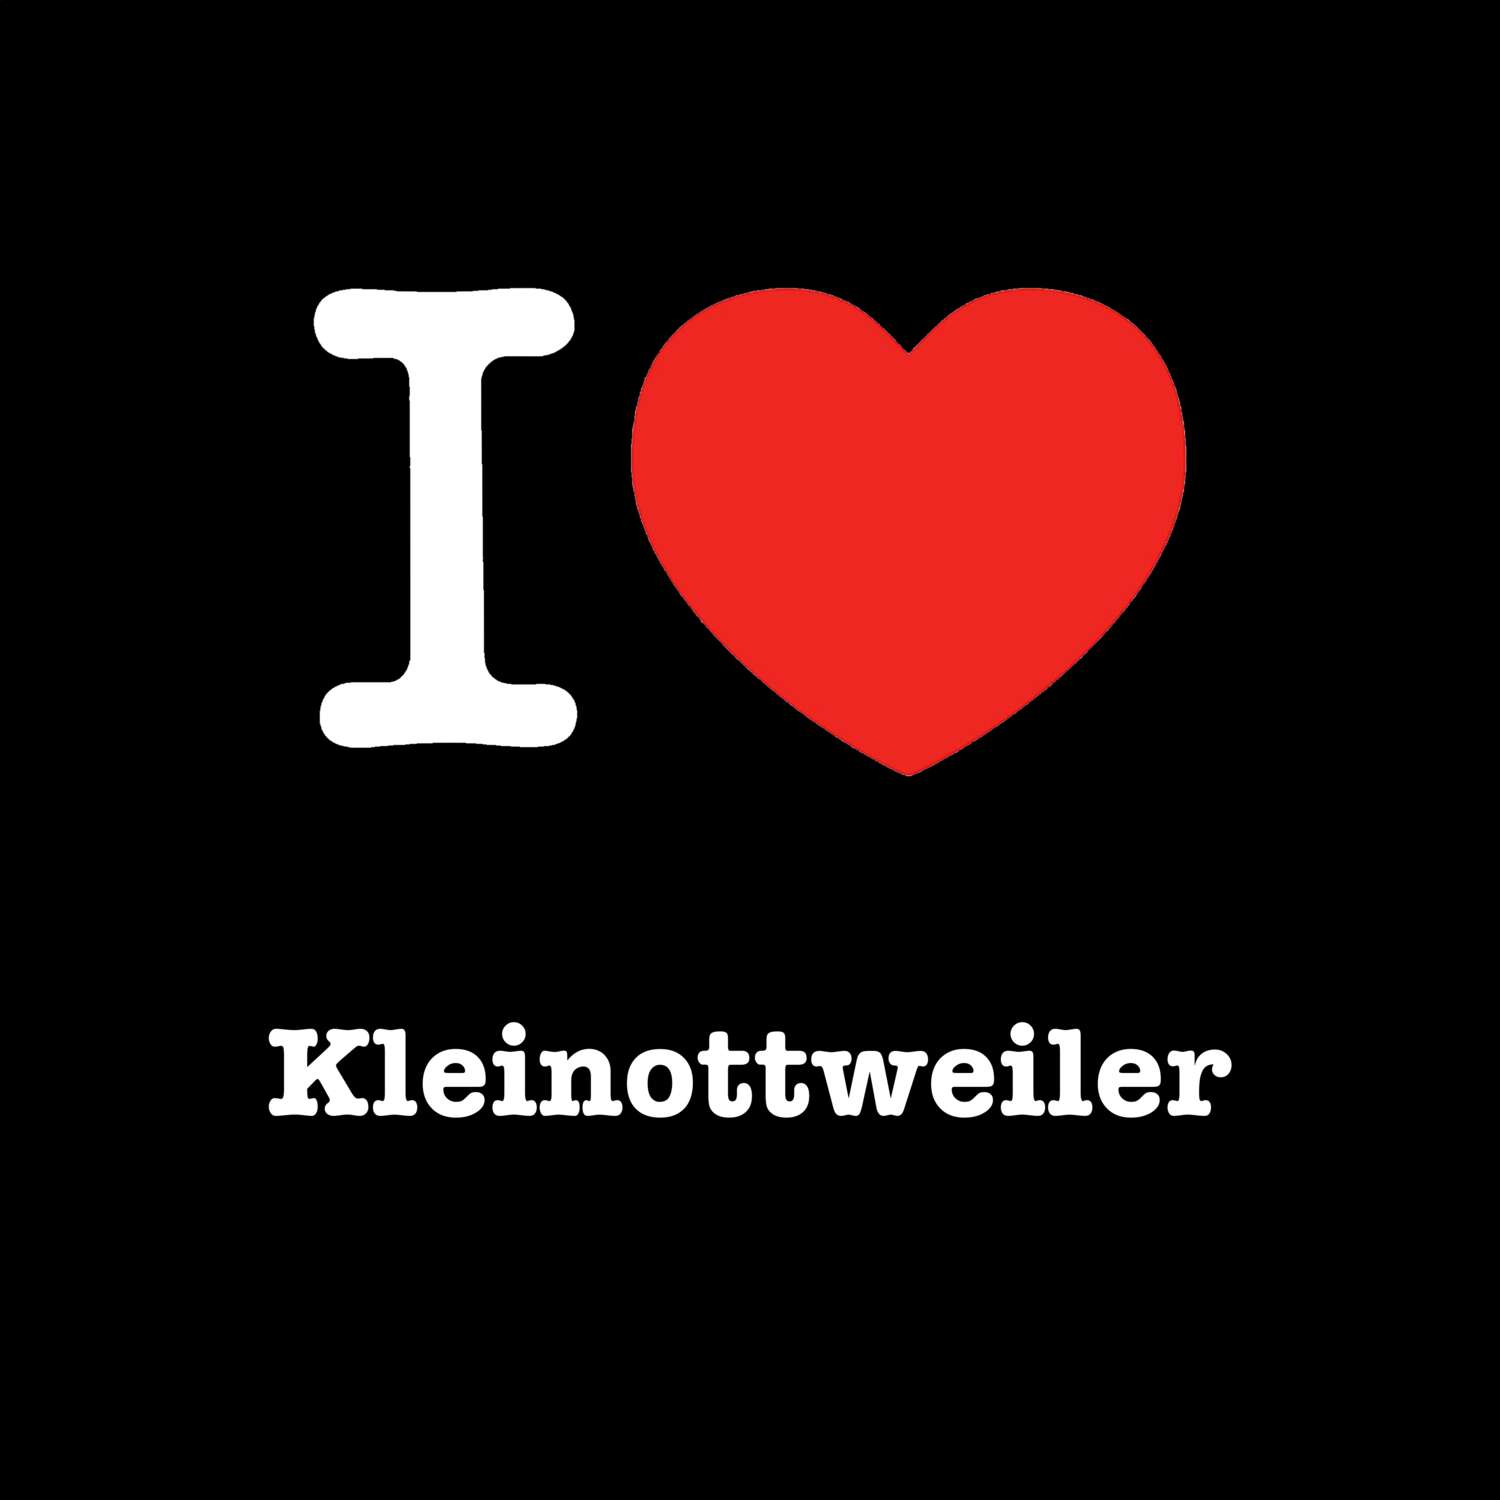 Kleinottweiler T-Shirt »I love«